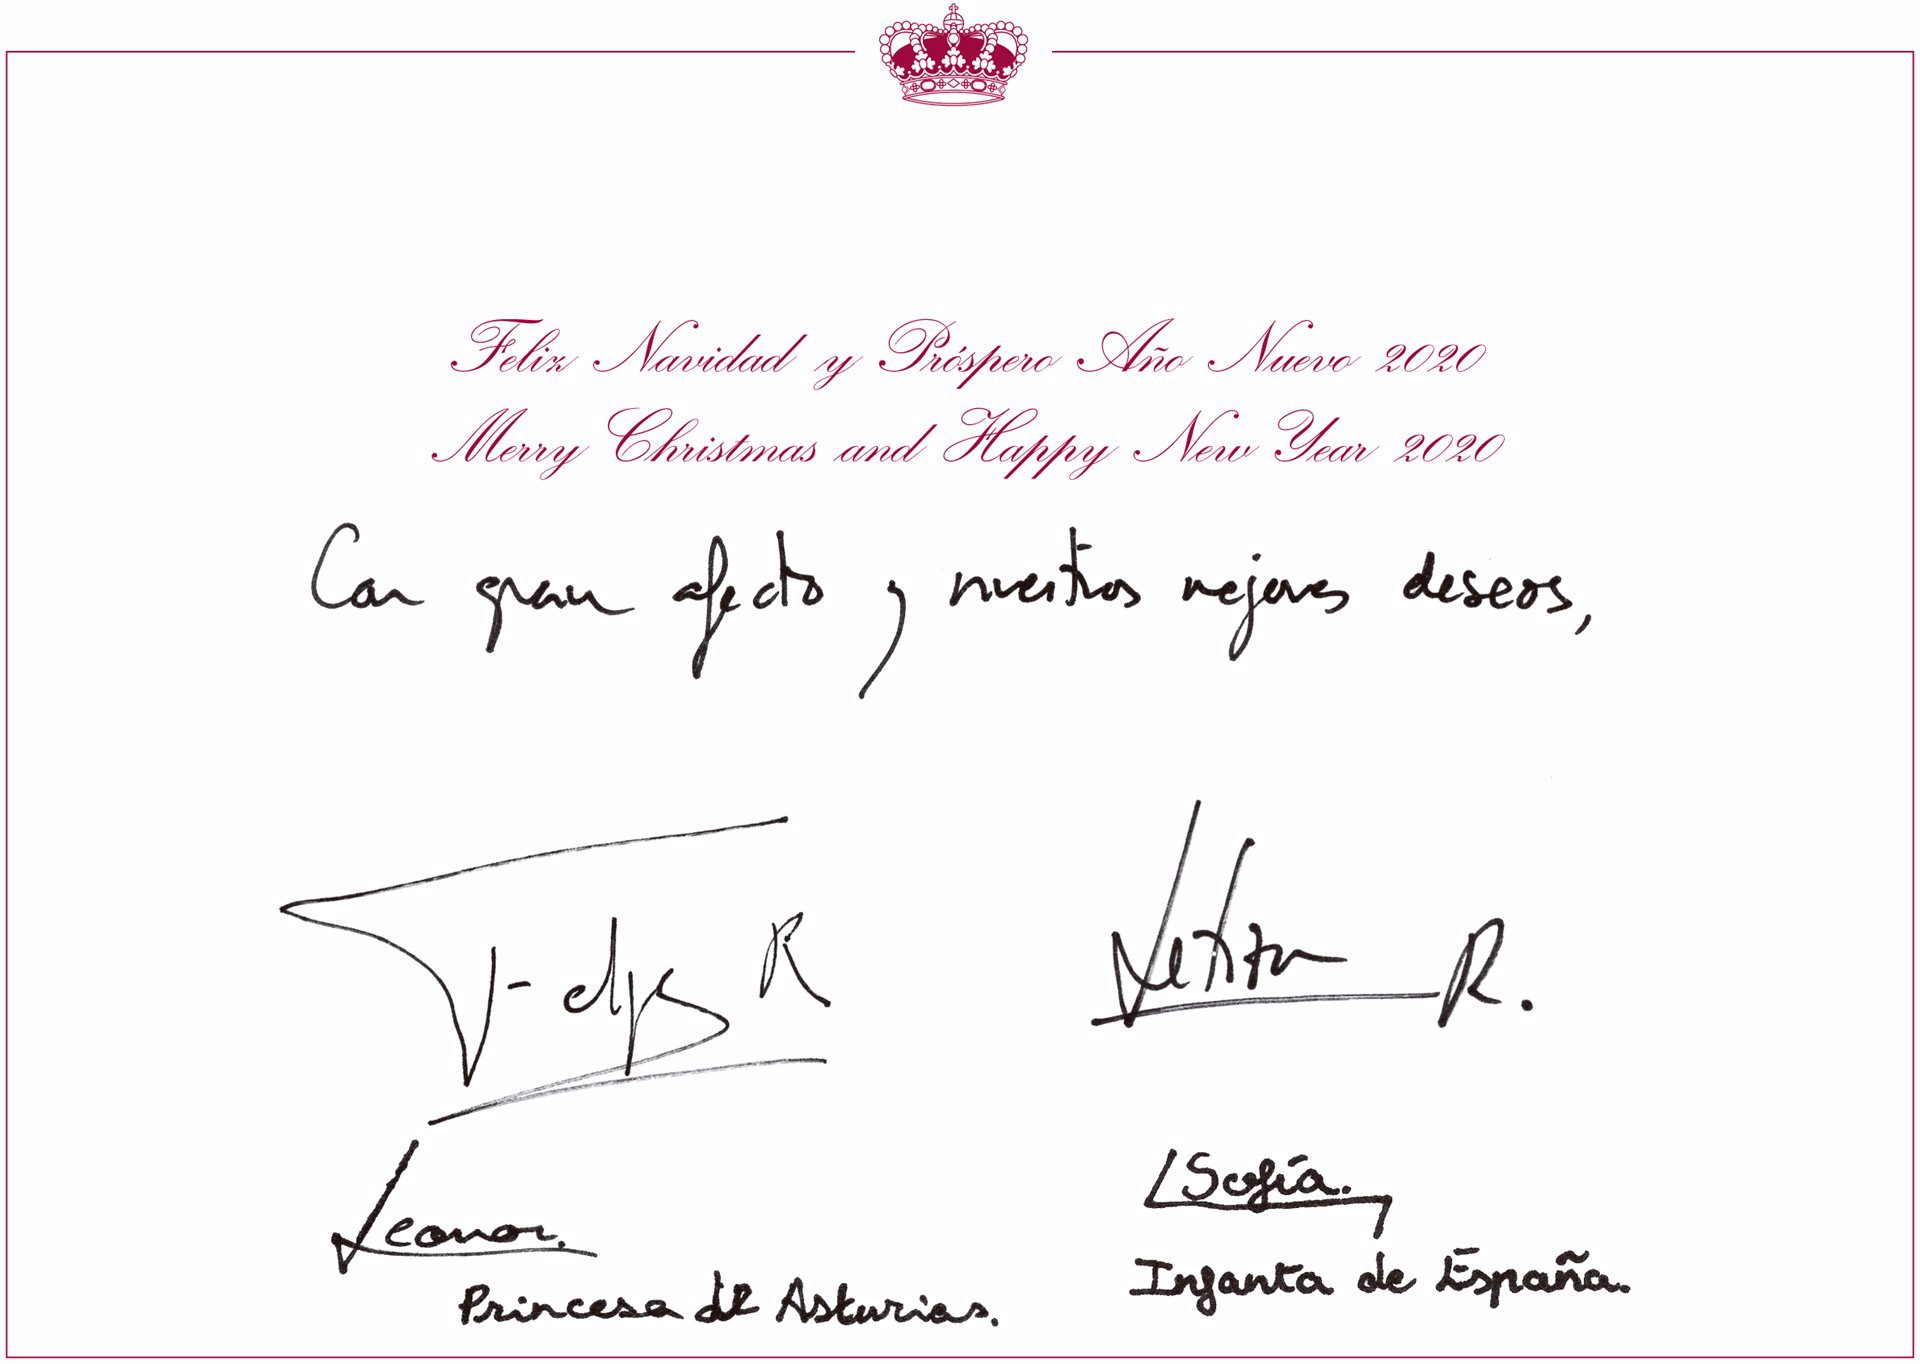 Firmas de la Familia Real, Felipe VI, Letizia, Princesa de Asturias Leonor e Infanta Sofía